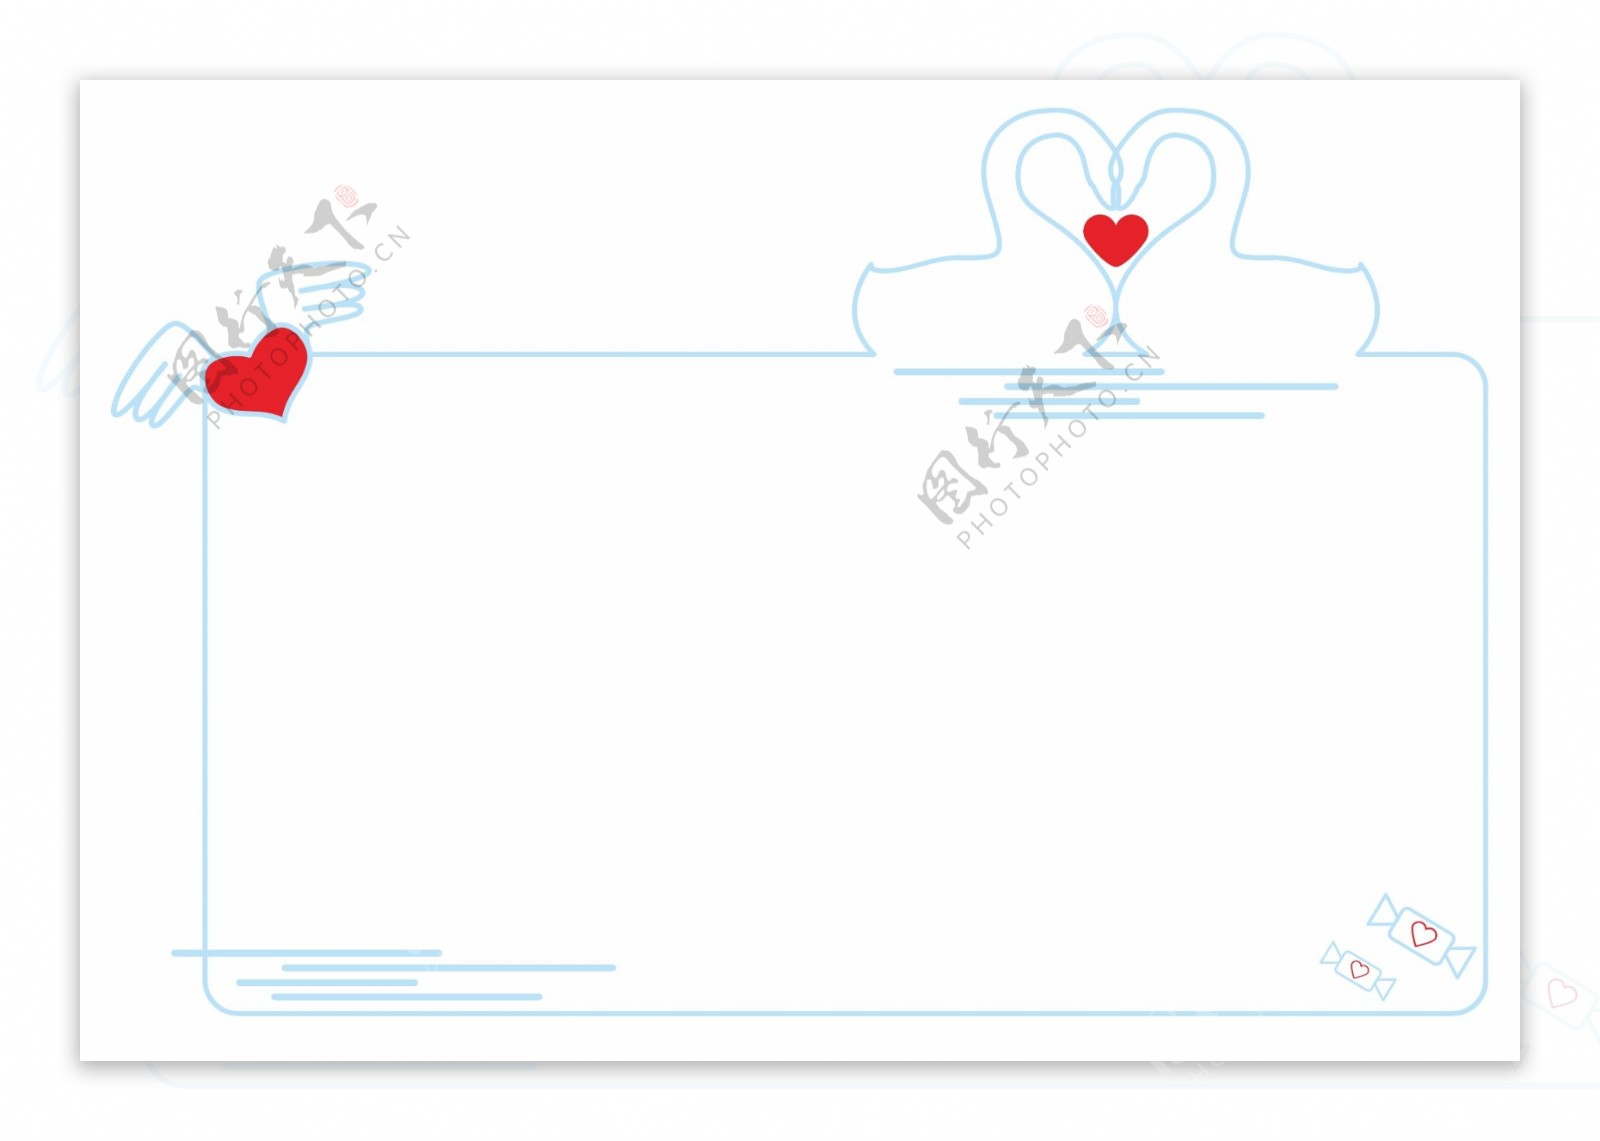 情人节蓝色爱情对吻天鹅剪影线稿矢量边框素材